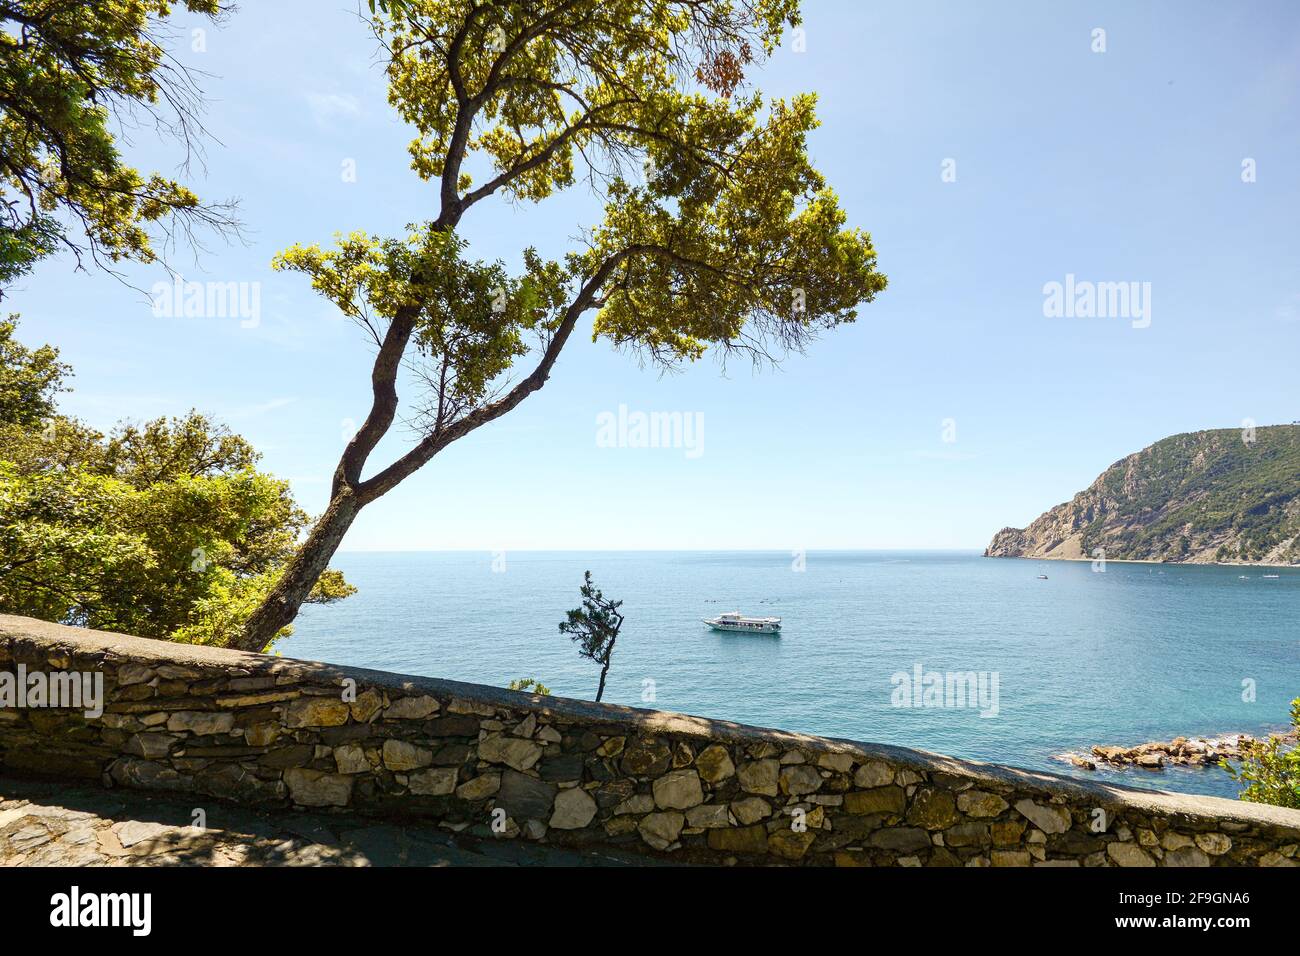 Blick vom Wanderweg auf die wunderschöne Küste und den Strand des mittelmeers in der Nähe des Dorfes Monterosso al Mare im Frühsommer, Cinque Terre Liguria Ita Stockfoto